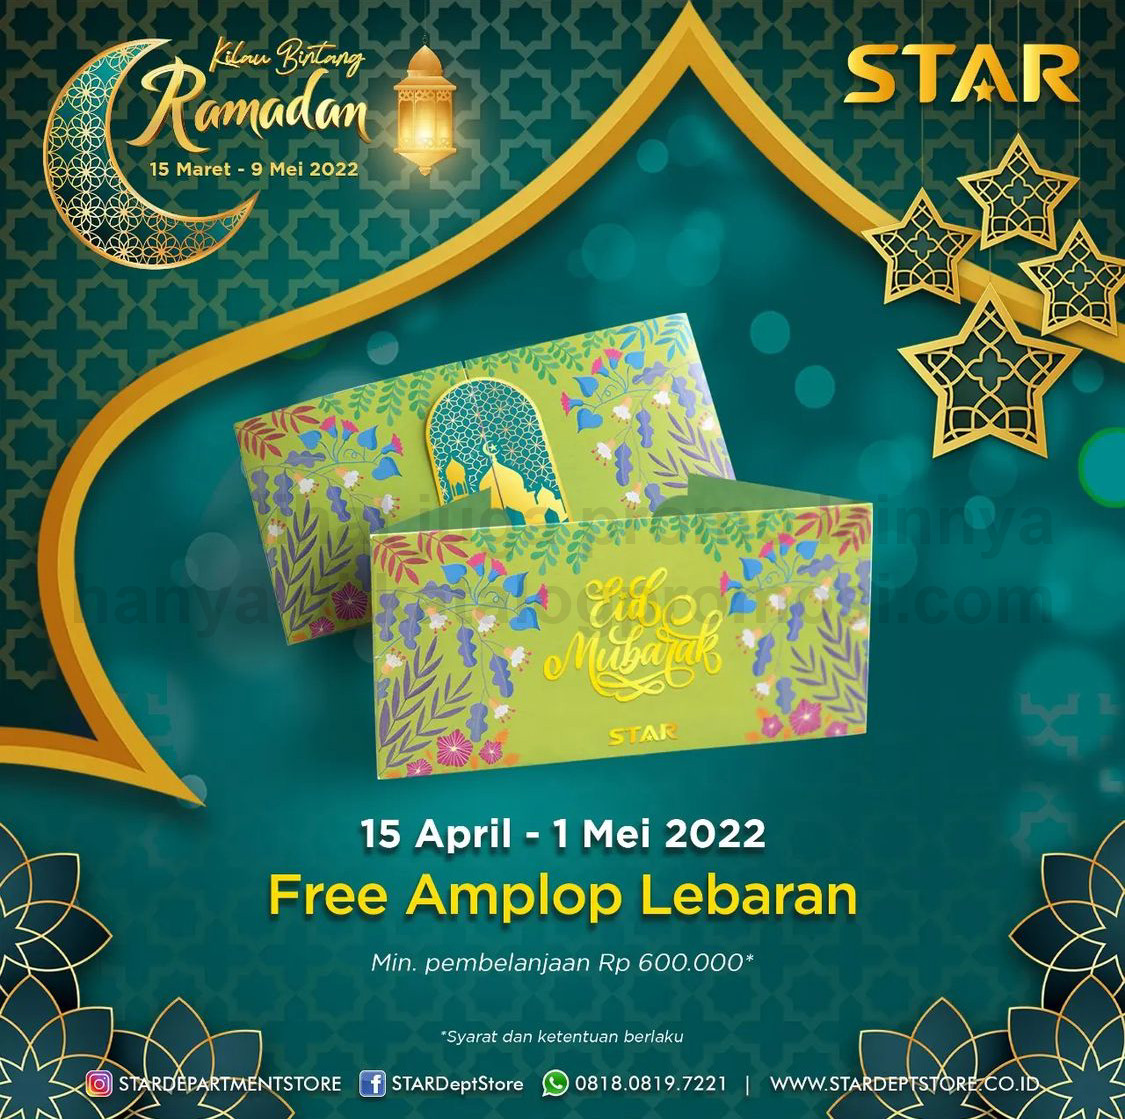 Promo STAR DEPARTMENT STORE FREE Amplop Lebaran exclusive untuk hari rayamu!